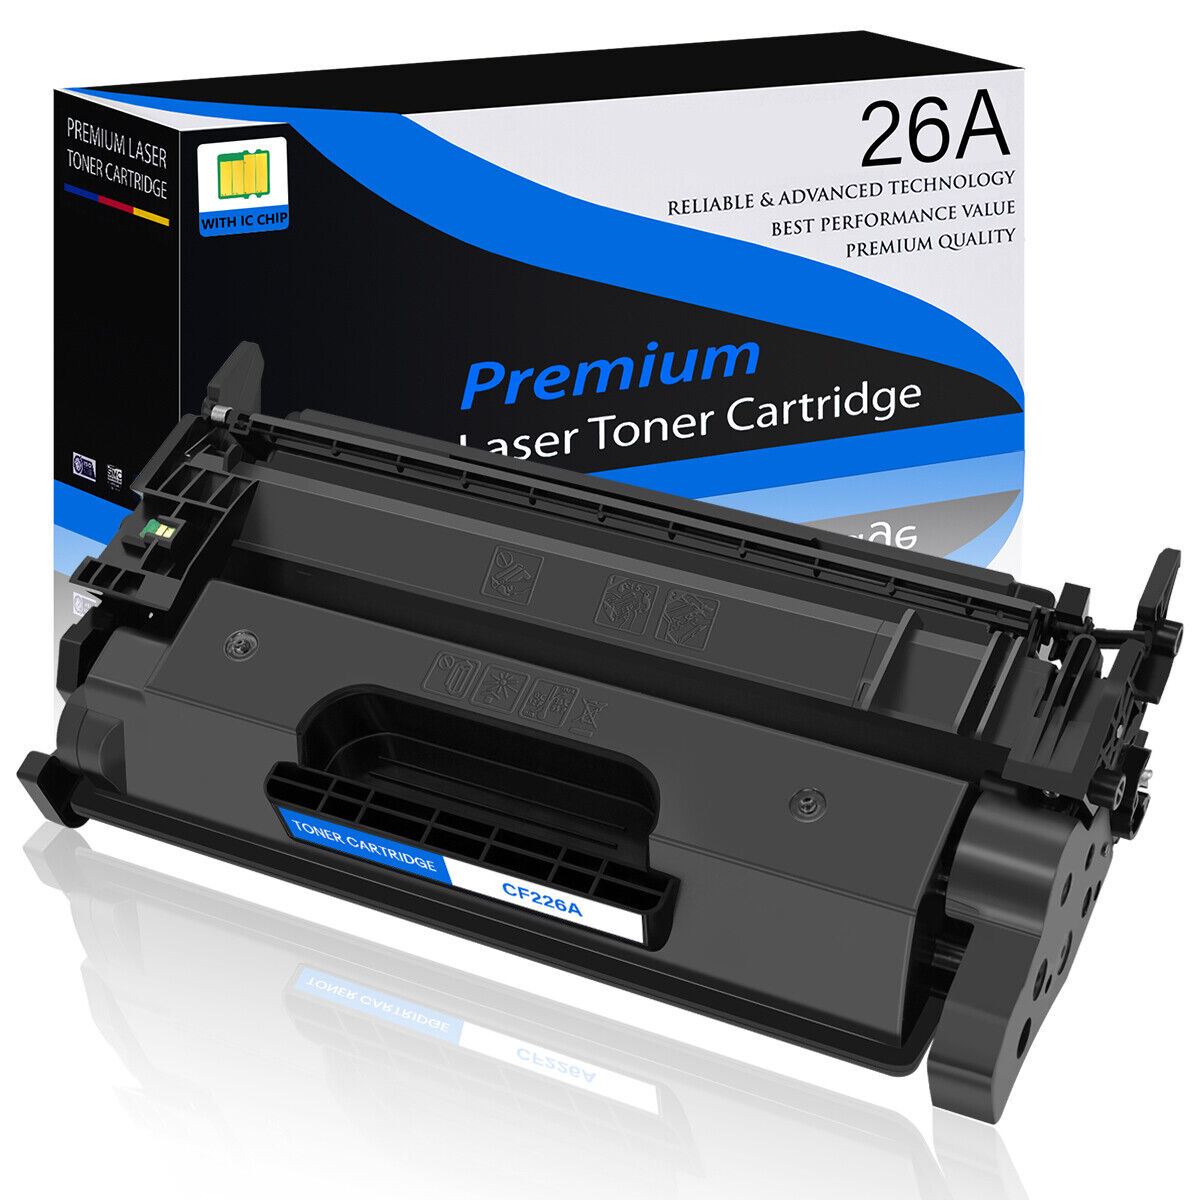 1-6PK CF226A 26A Toner Cartridge for HP Laserjet Pro MFP M426fdw M426fdn M426dw